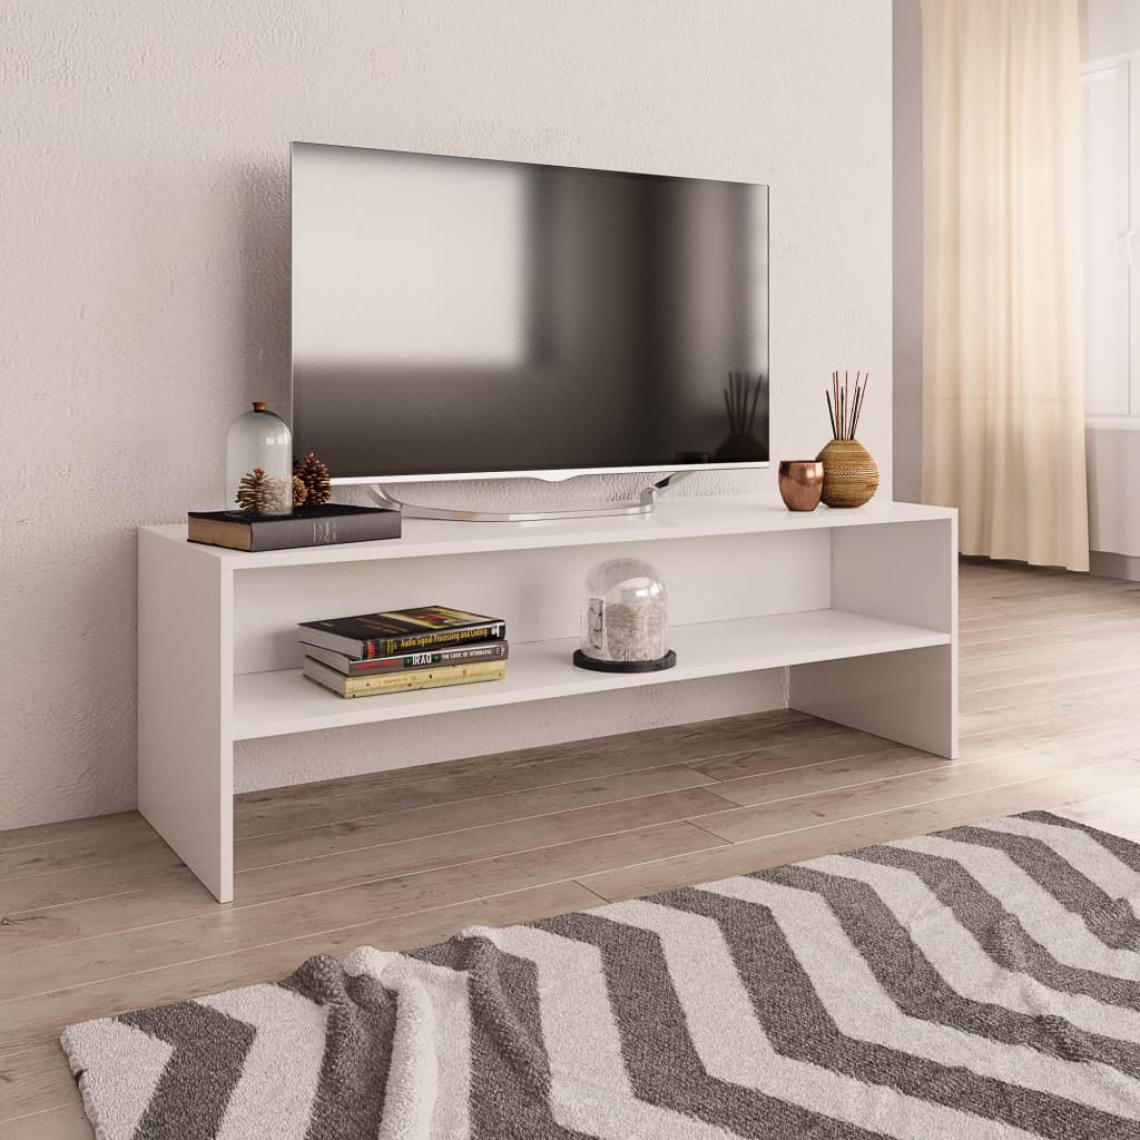 Chunhelife - Meuble TV Blanc 120 x 40 x 40 cm Aggloméré - Meubles TV, Hi-Fi